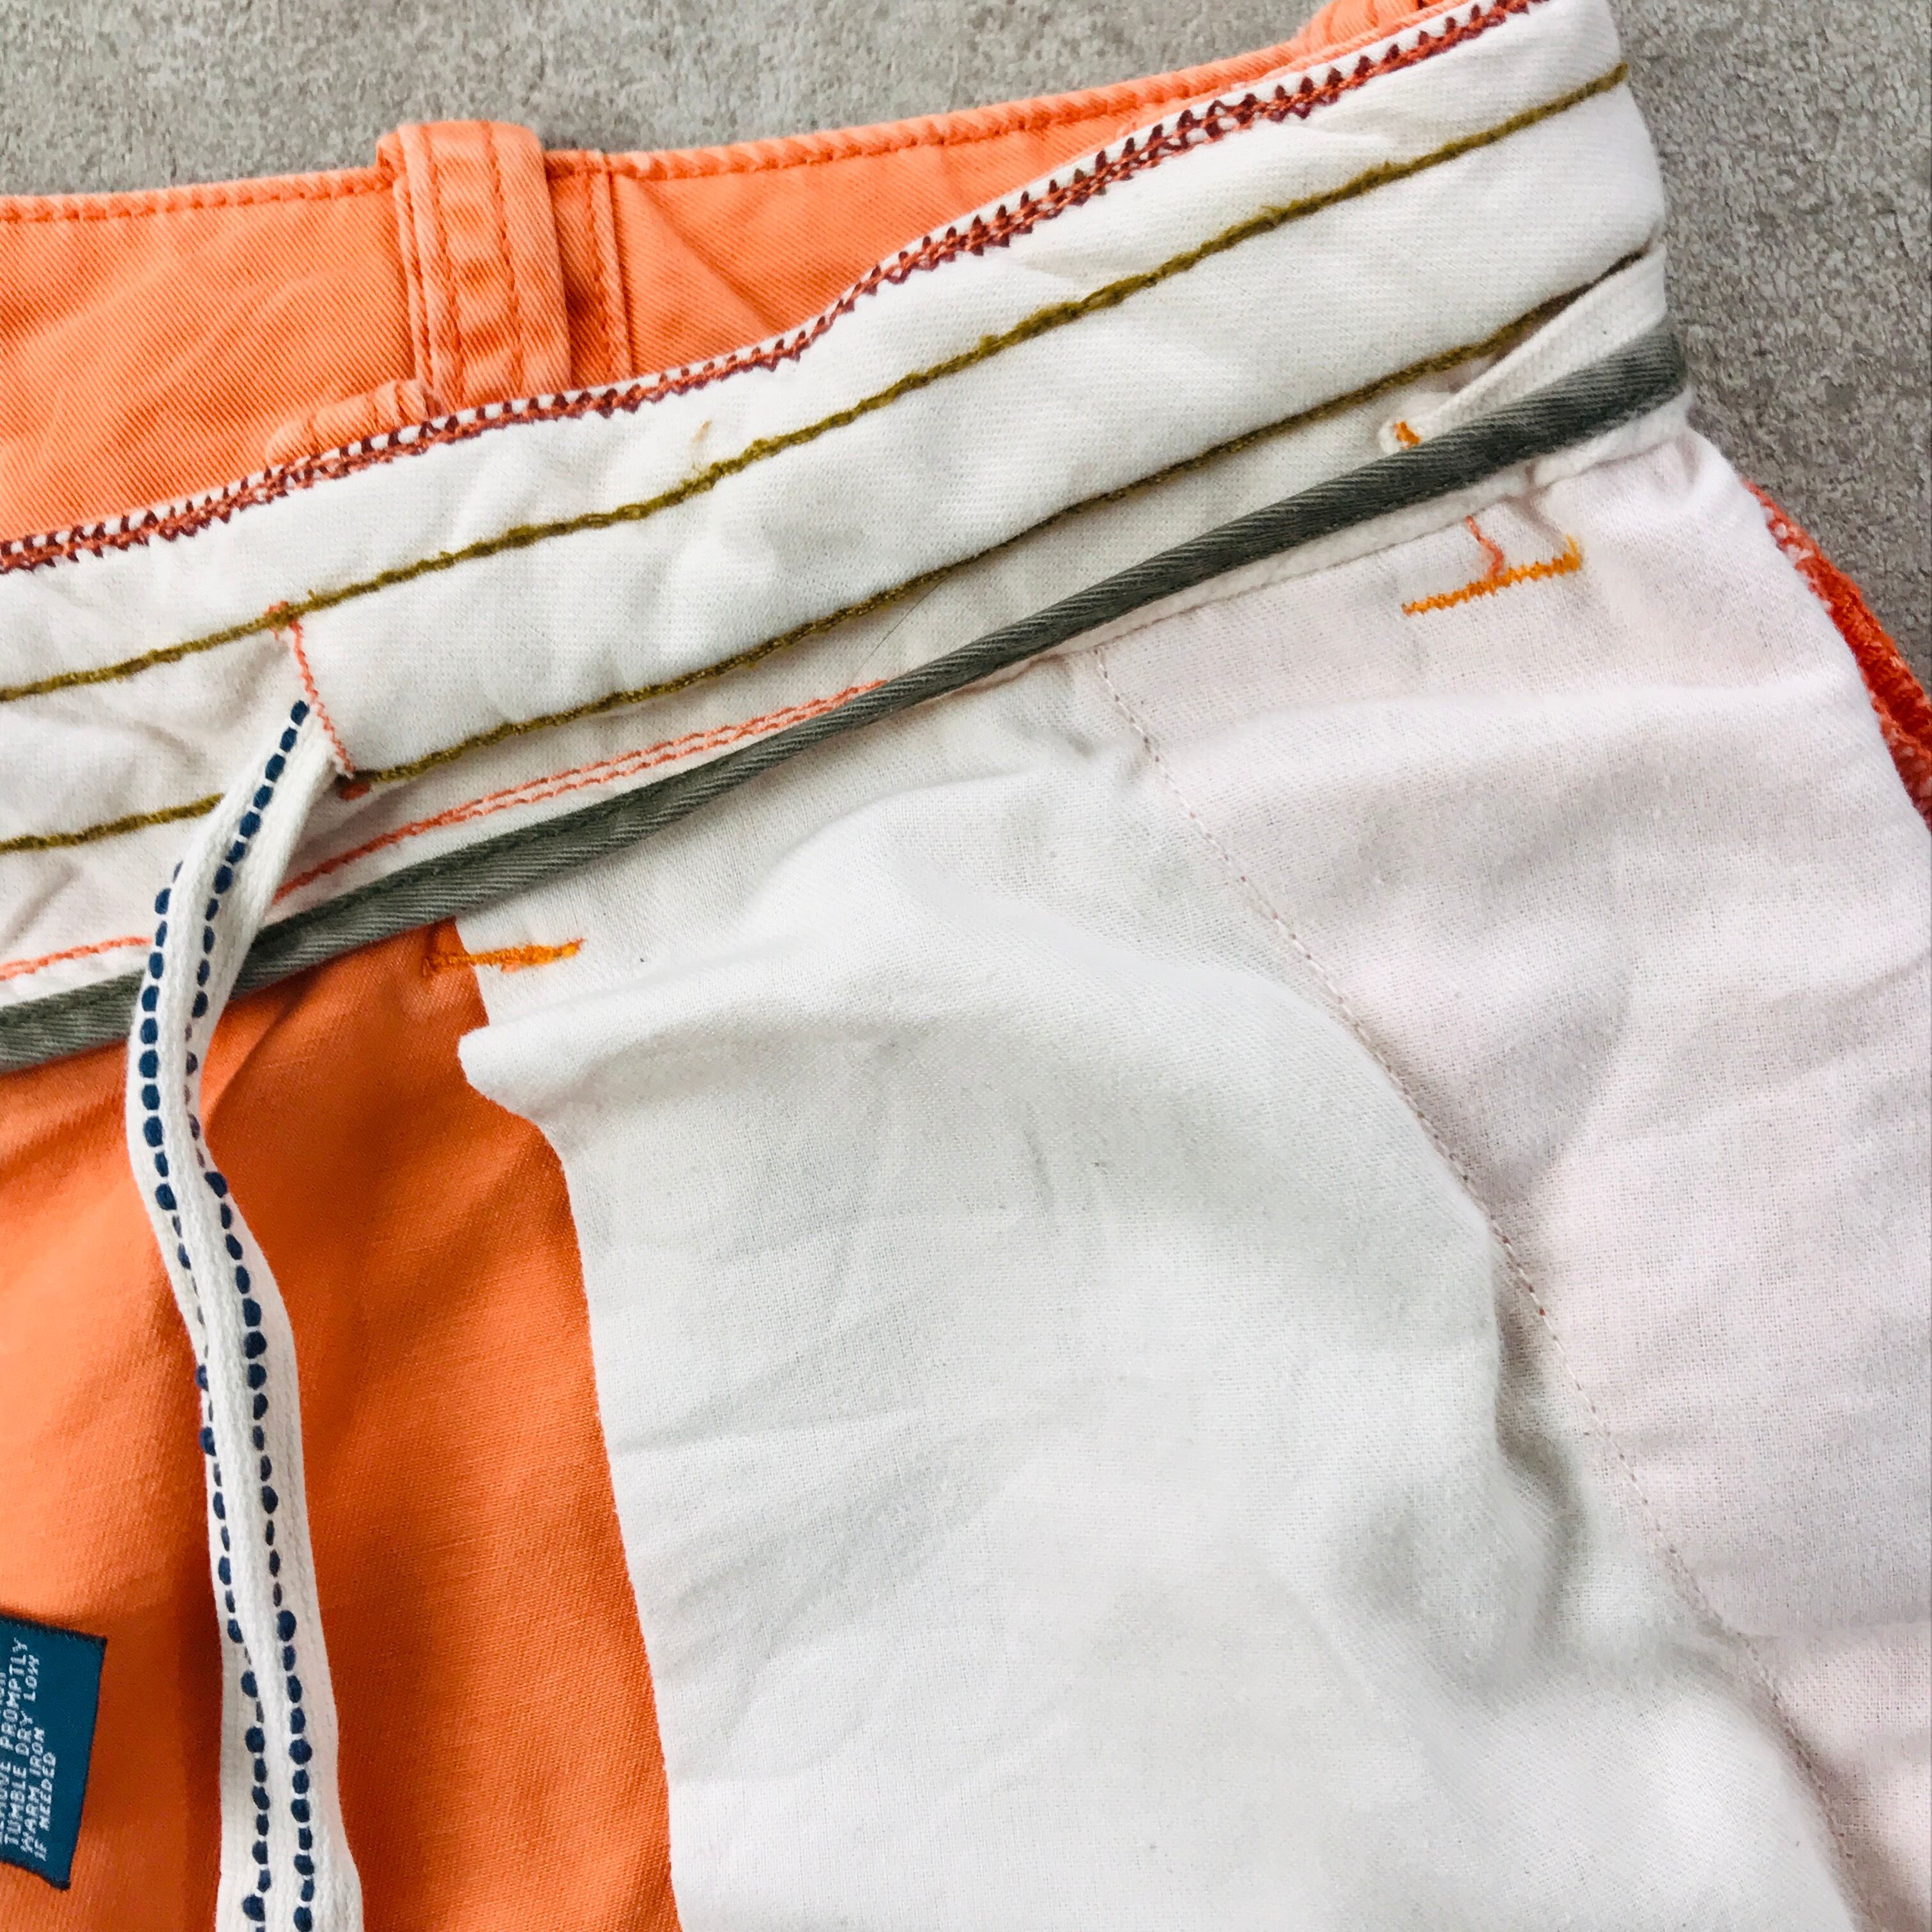 【モード】HUGO BOSS オレンジ刺繍デザイン ステッチ グレー パンツ